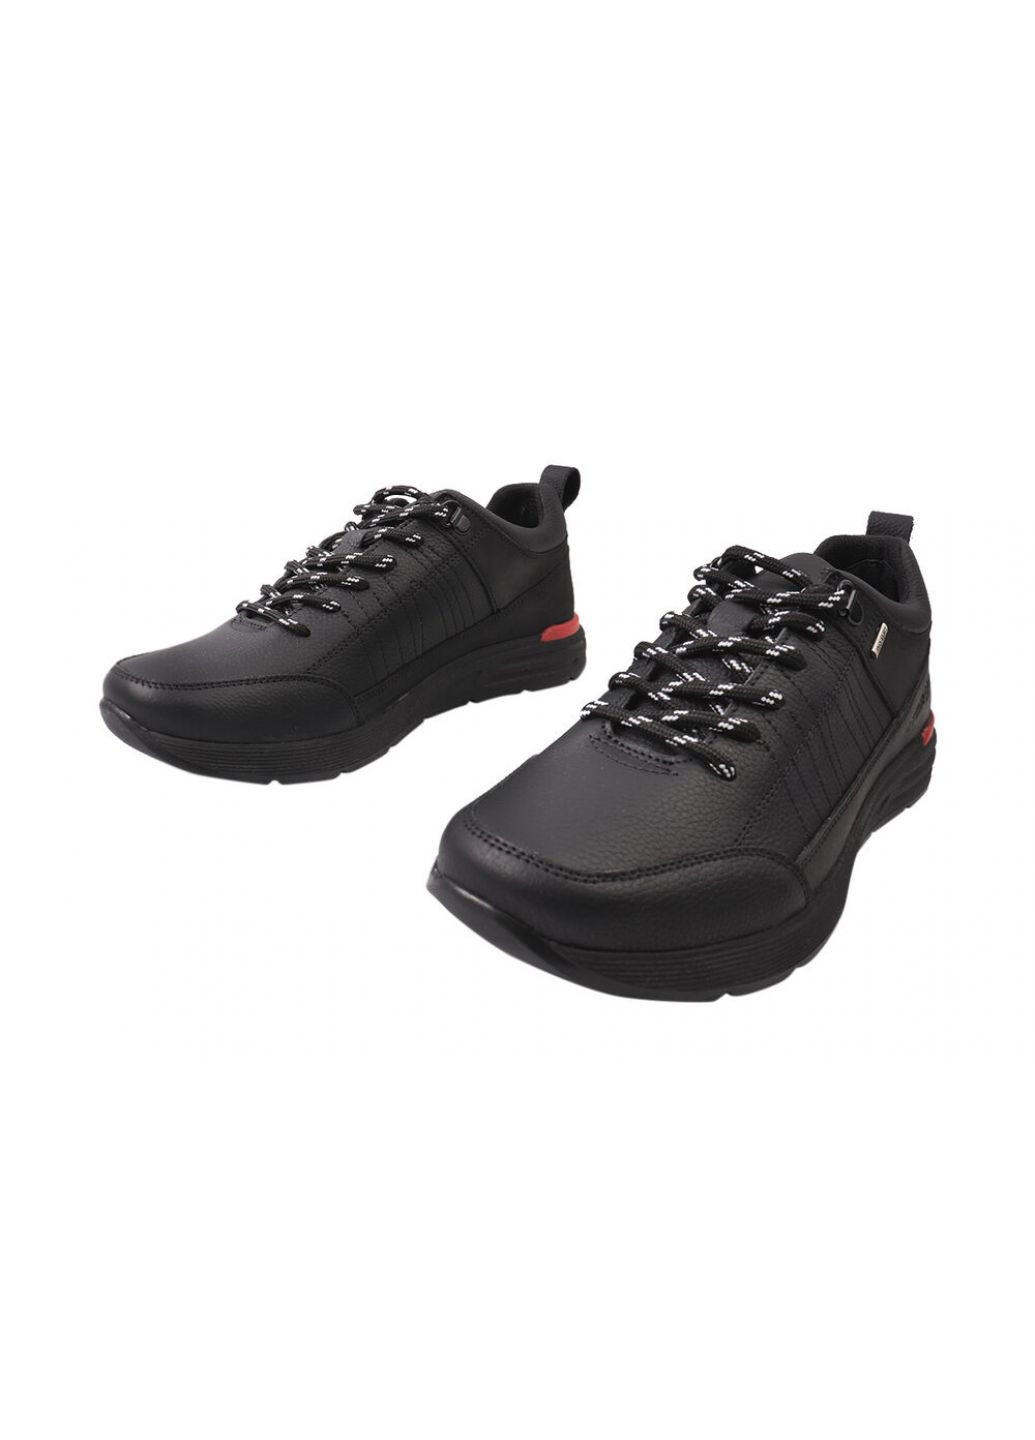 Черные кроссовки мужские из натуральной кожи, на низком ходу, на шнуровке, черные, украина Brave 185-21/22DTS